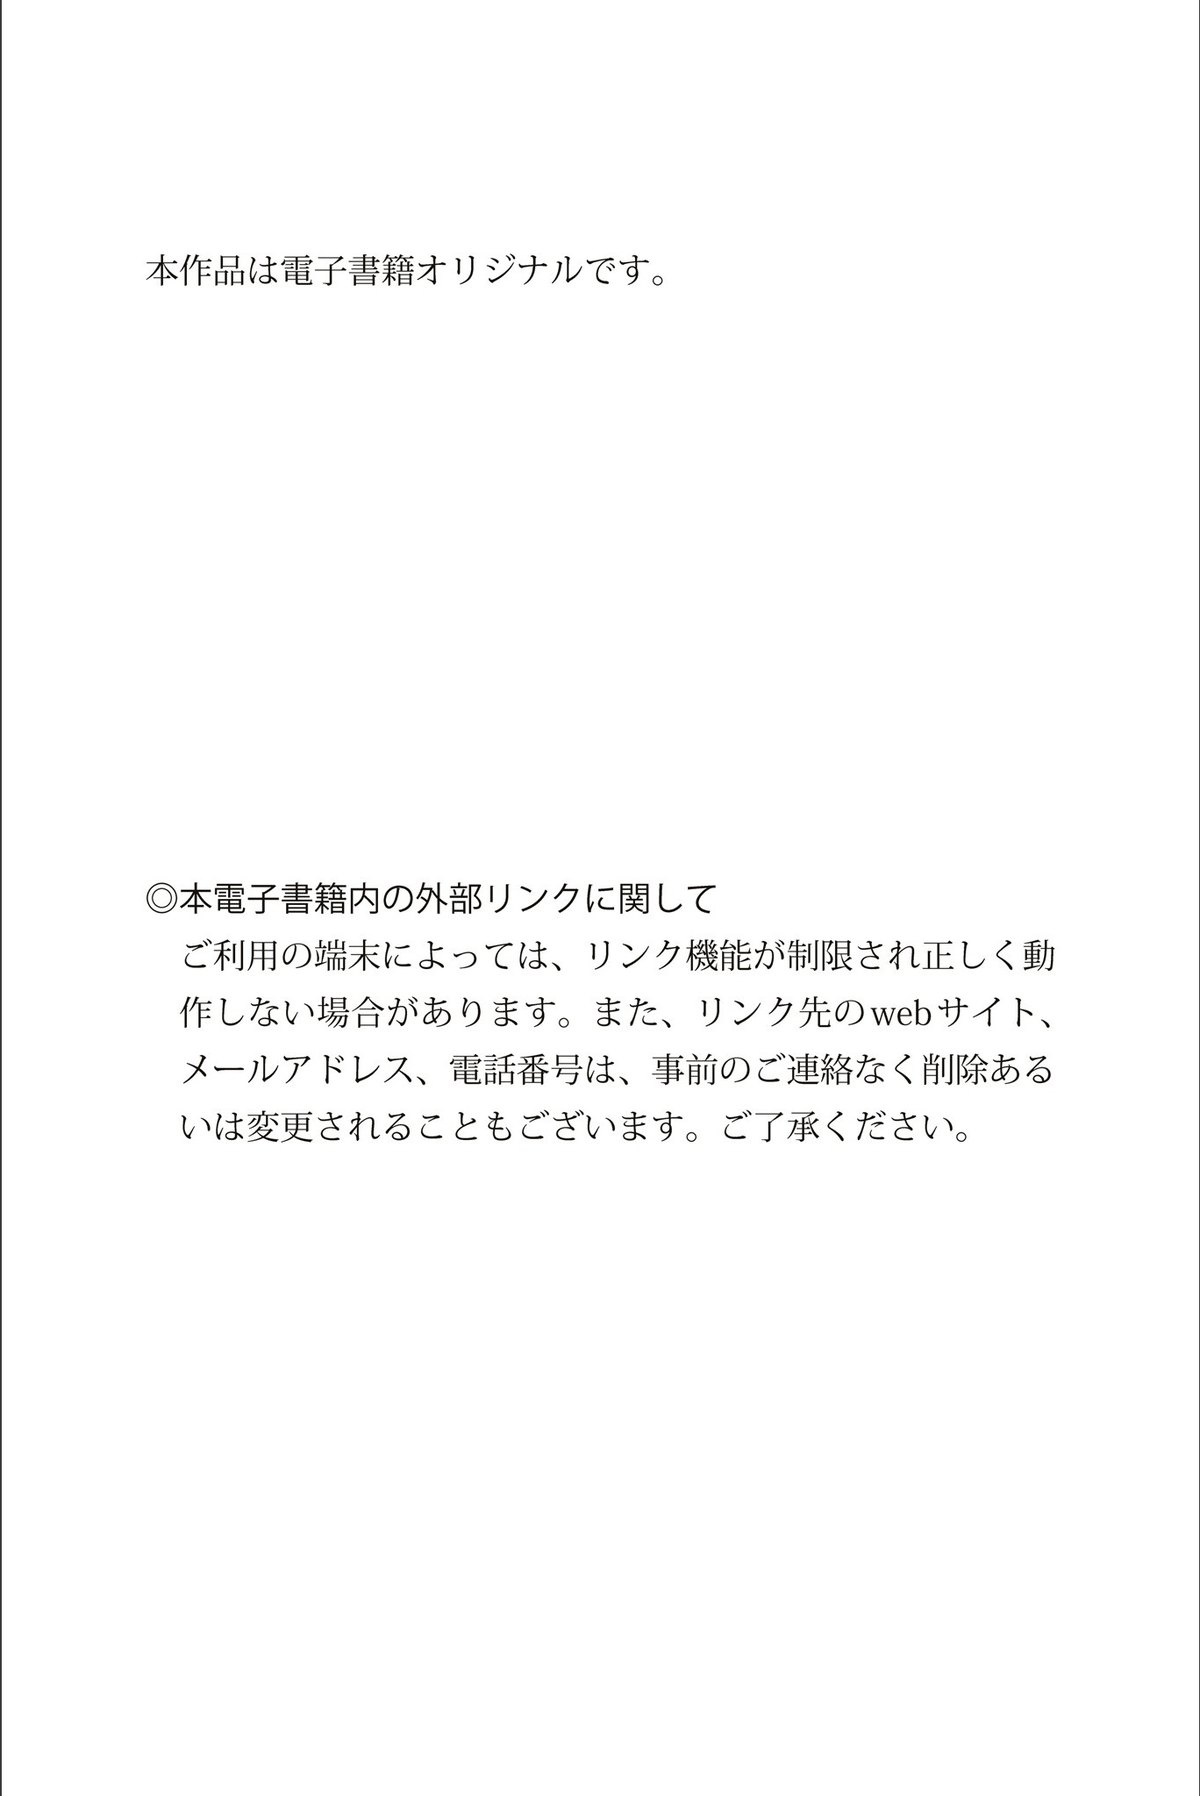 Weekly Gendai Photobook 2023 07 21 Tomu Muto 武藤十夢 Genius To Seduce B 0049 1968653077.jpg